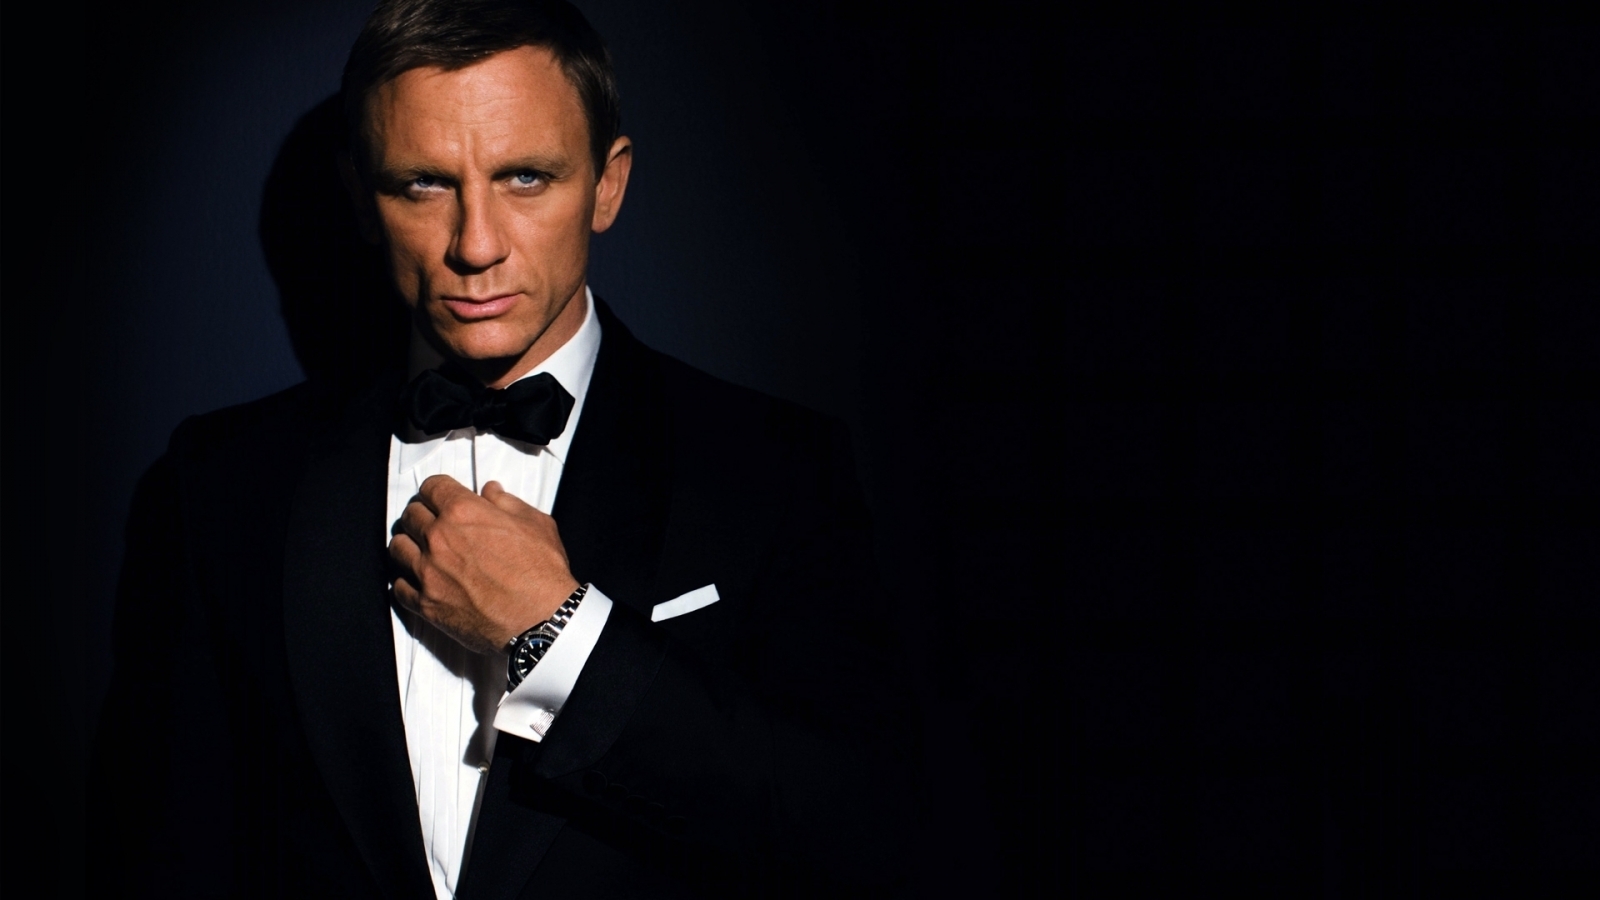 James Bond for 1600 x 900 HDTV resolution